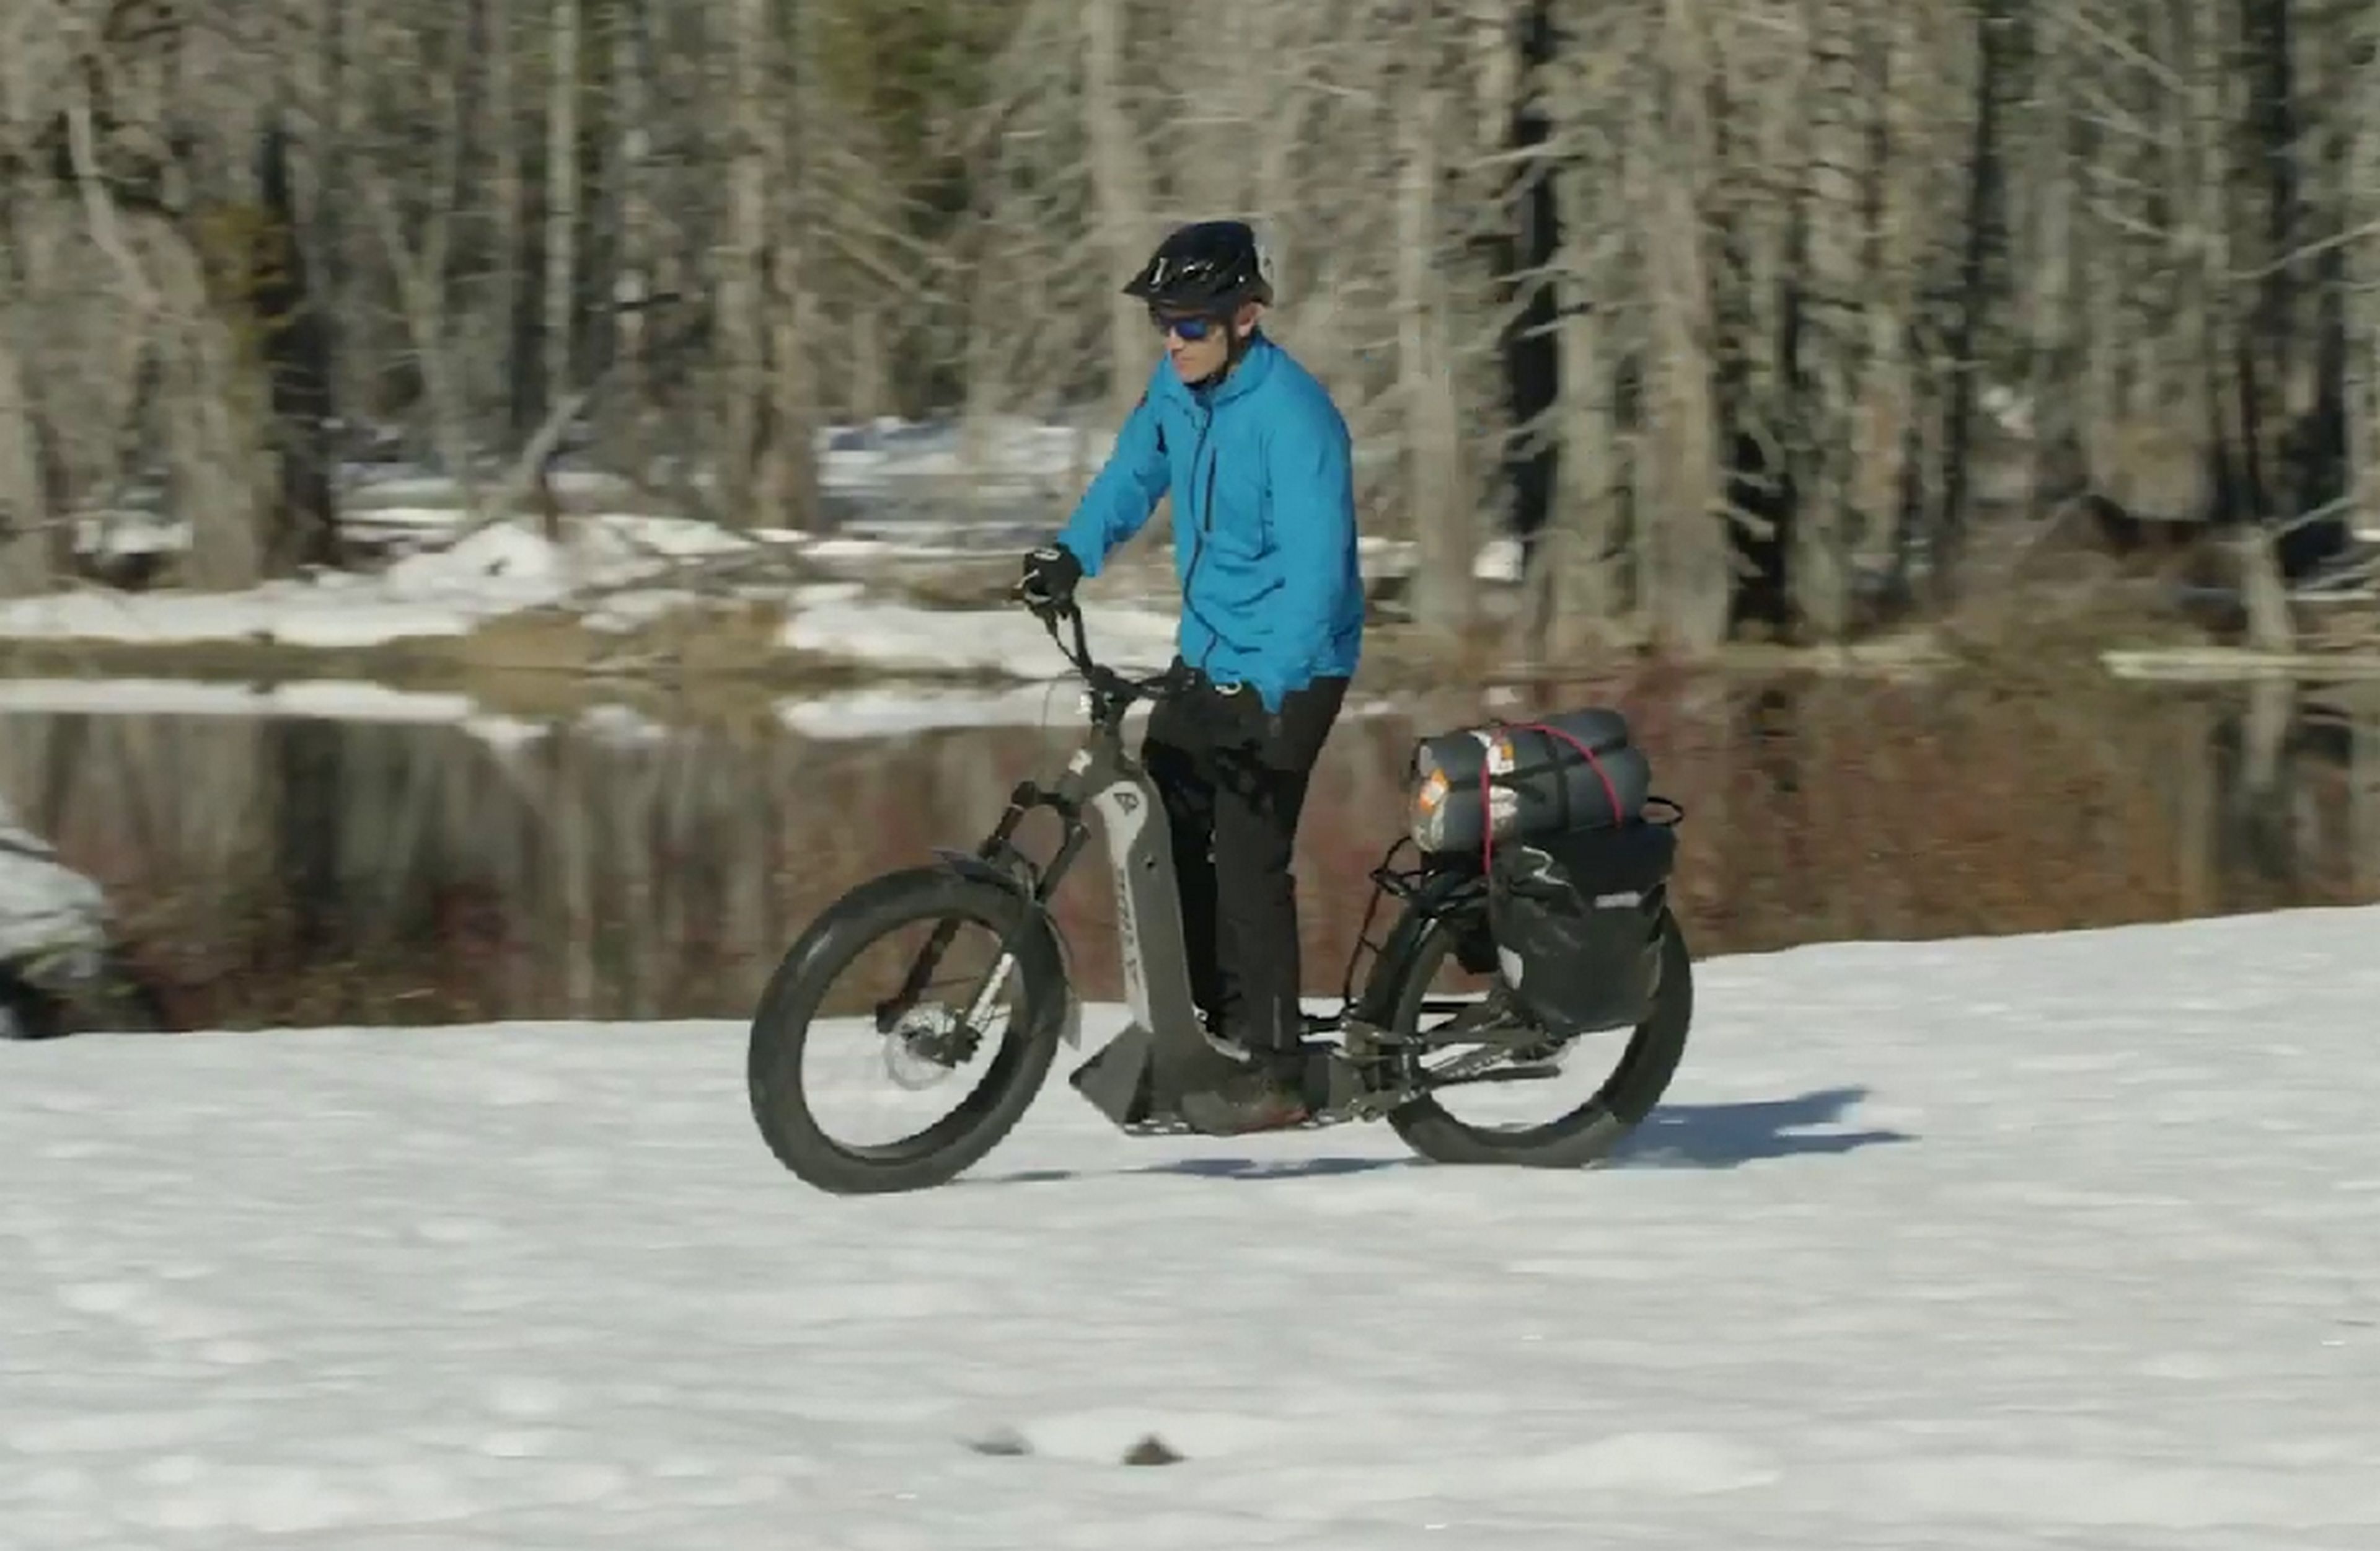 A-Ride, el scooter eléctrico todoterreno sin asiento que sirve para carretera, tierra y nieve